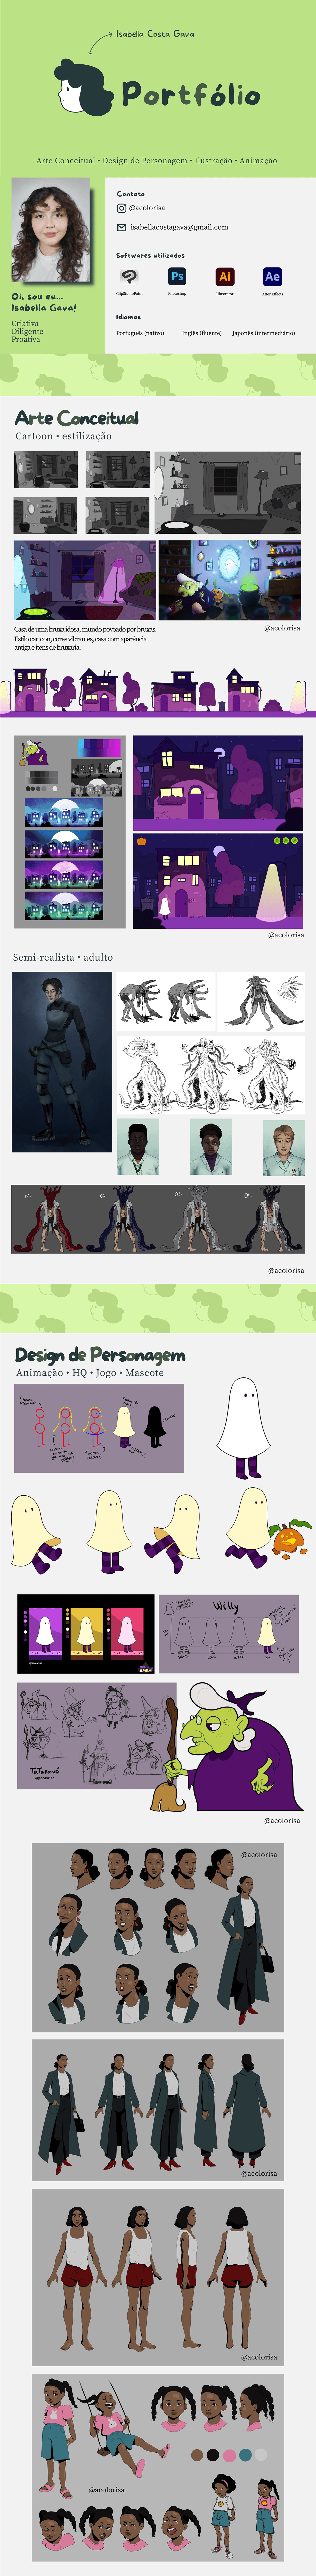 portfolio design animation  Character design  design de personagem animação Ilustração arte digital Currículo Illustrator